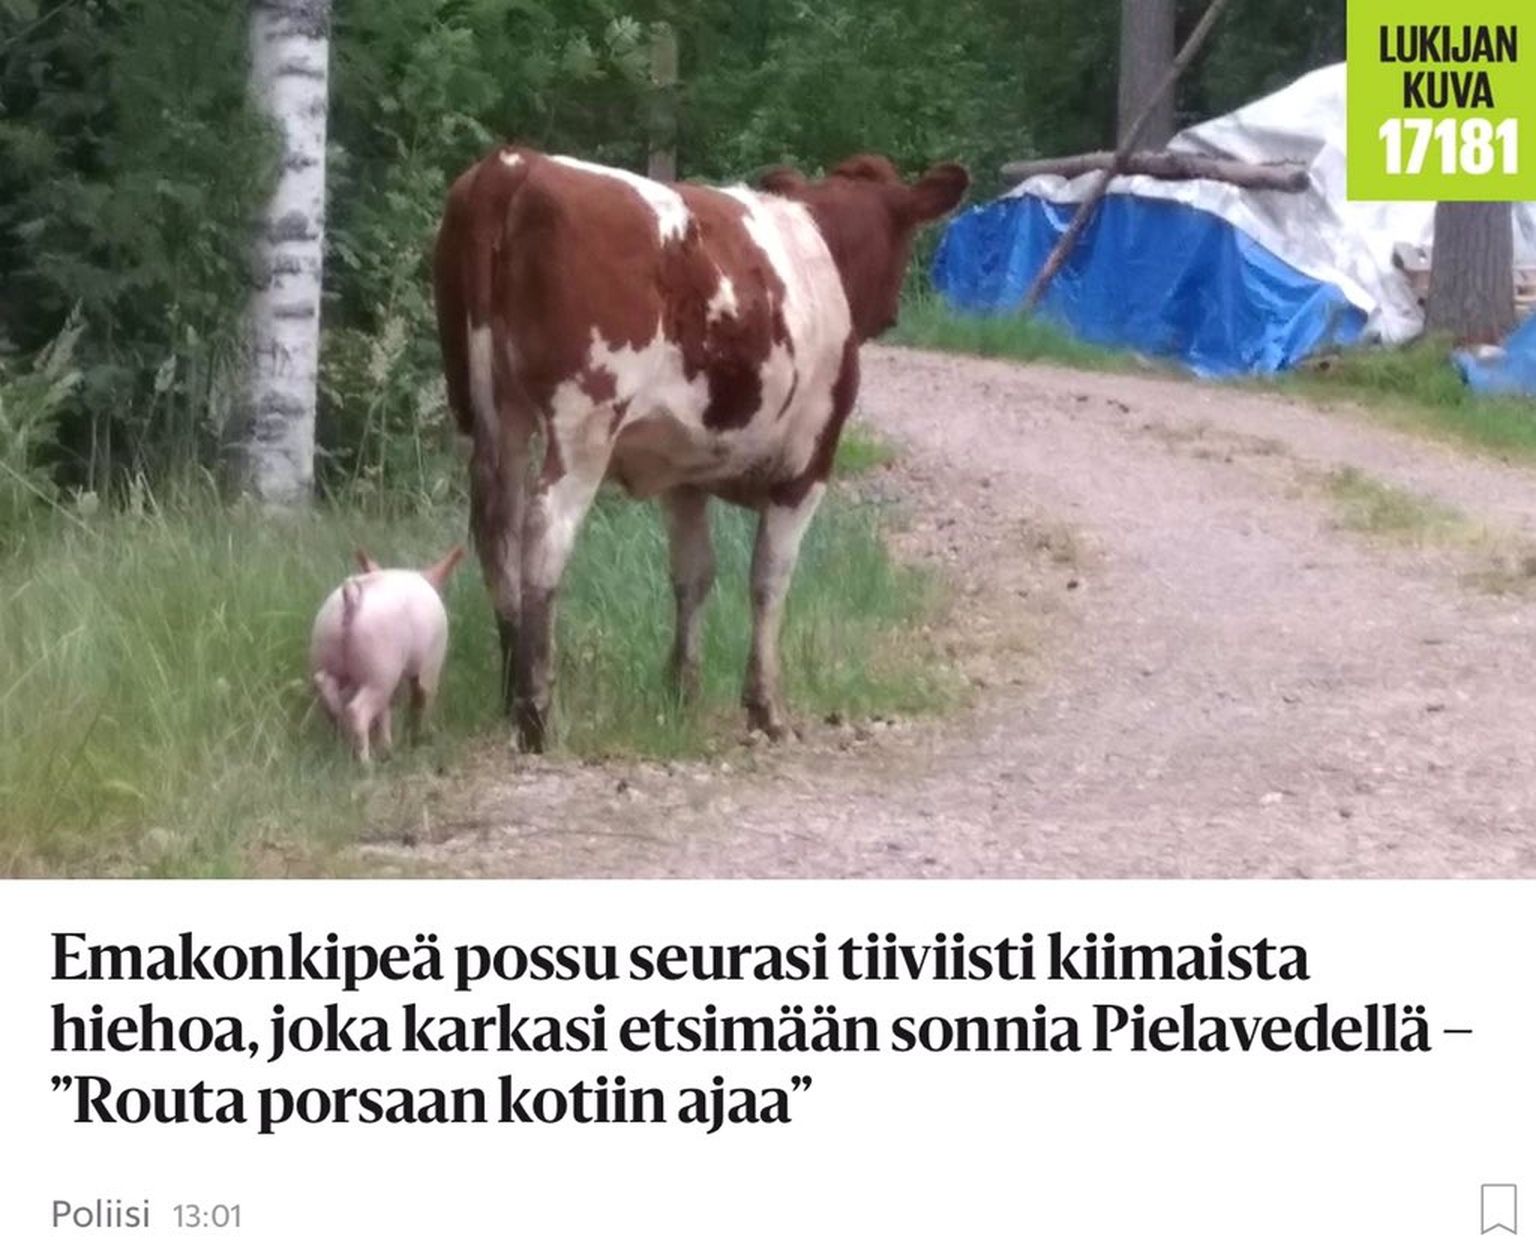 Soome keskosas Pielavesi vallas asuvast talust põgenesid möödunud nädalal emane mullikas ja põrsas koos kaks korda